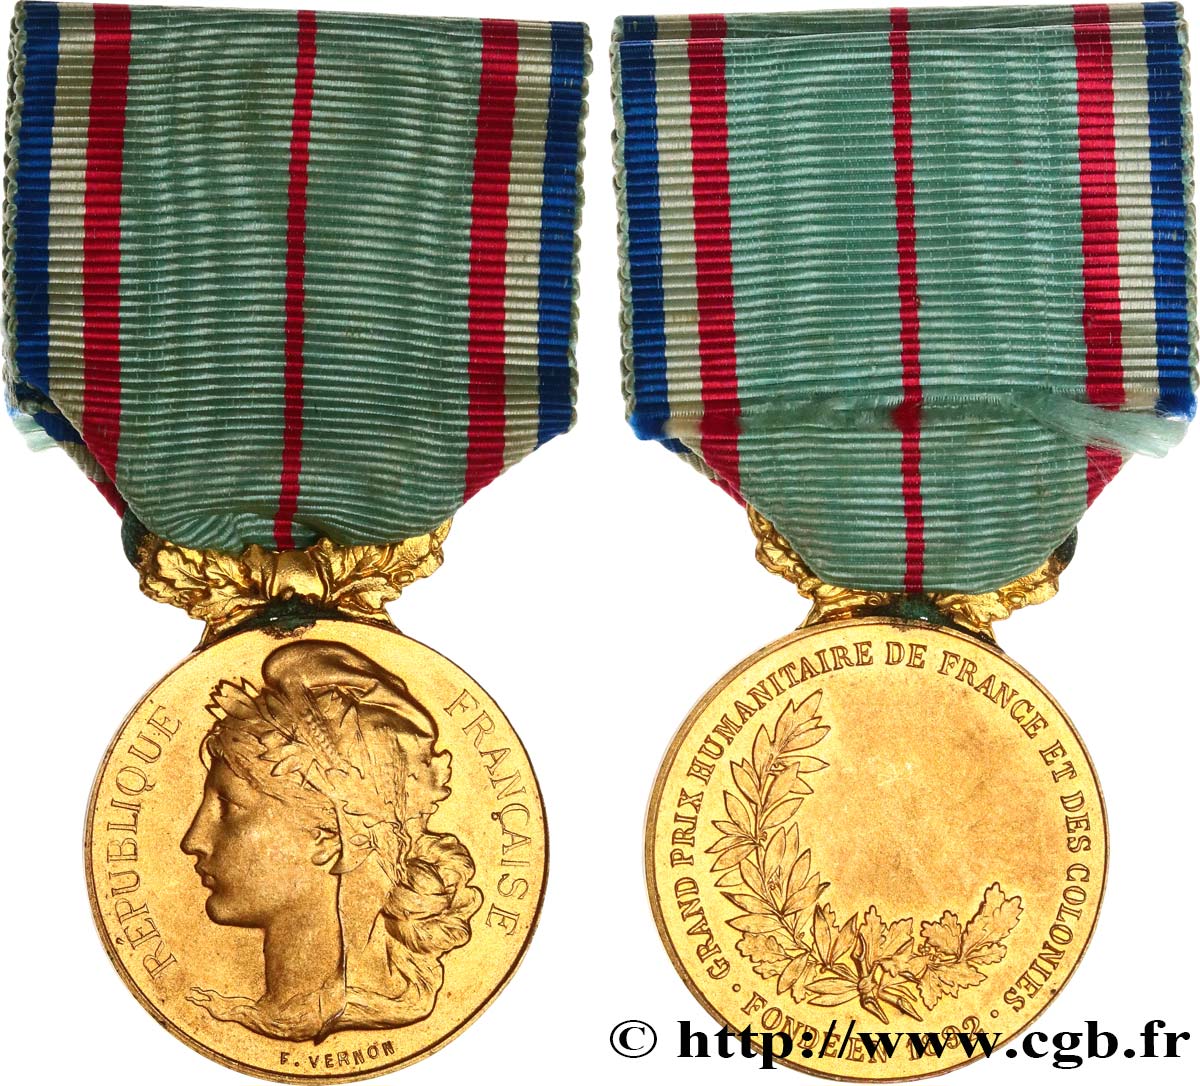 III REPUBLIC Médaille, Grand prix humanitaire de France et des colonies AU